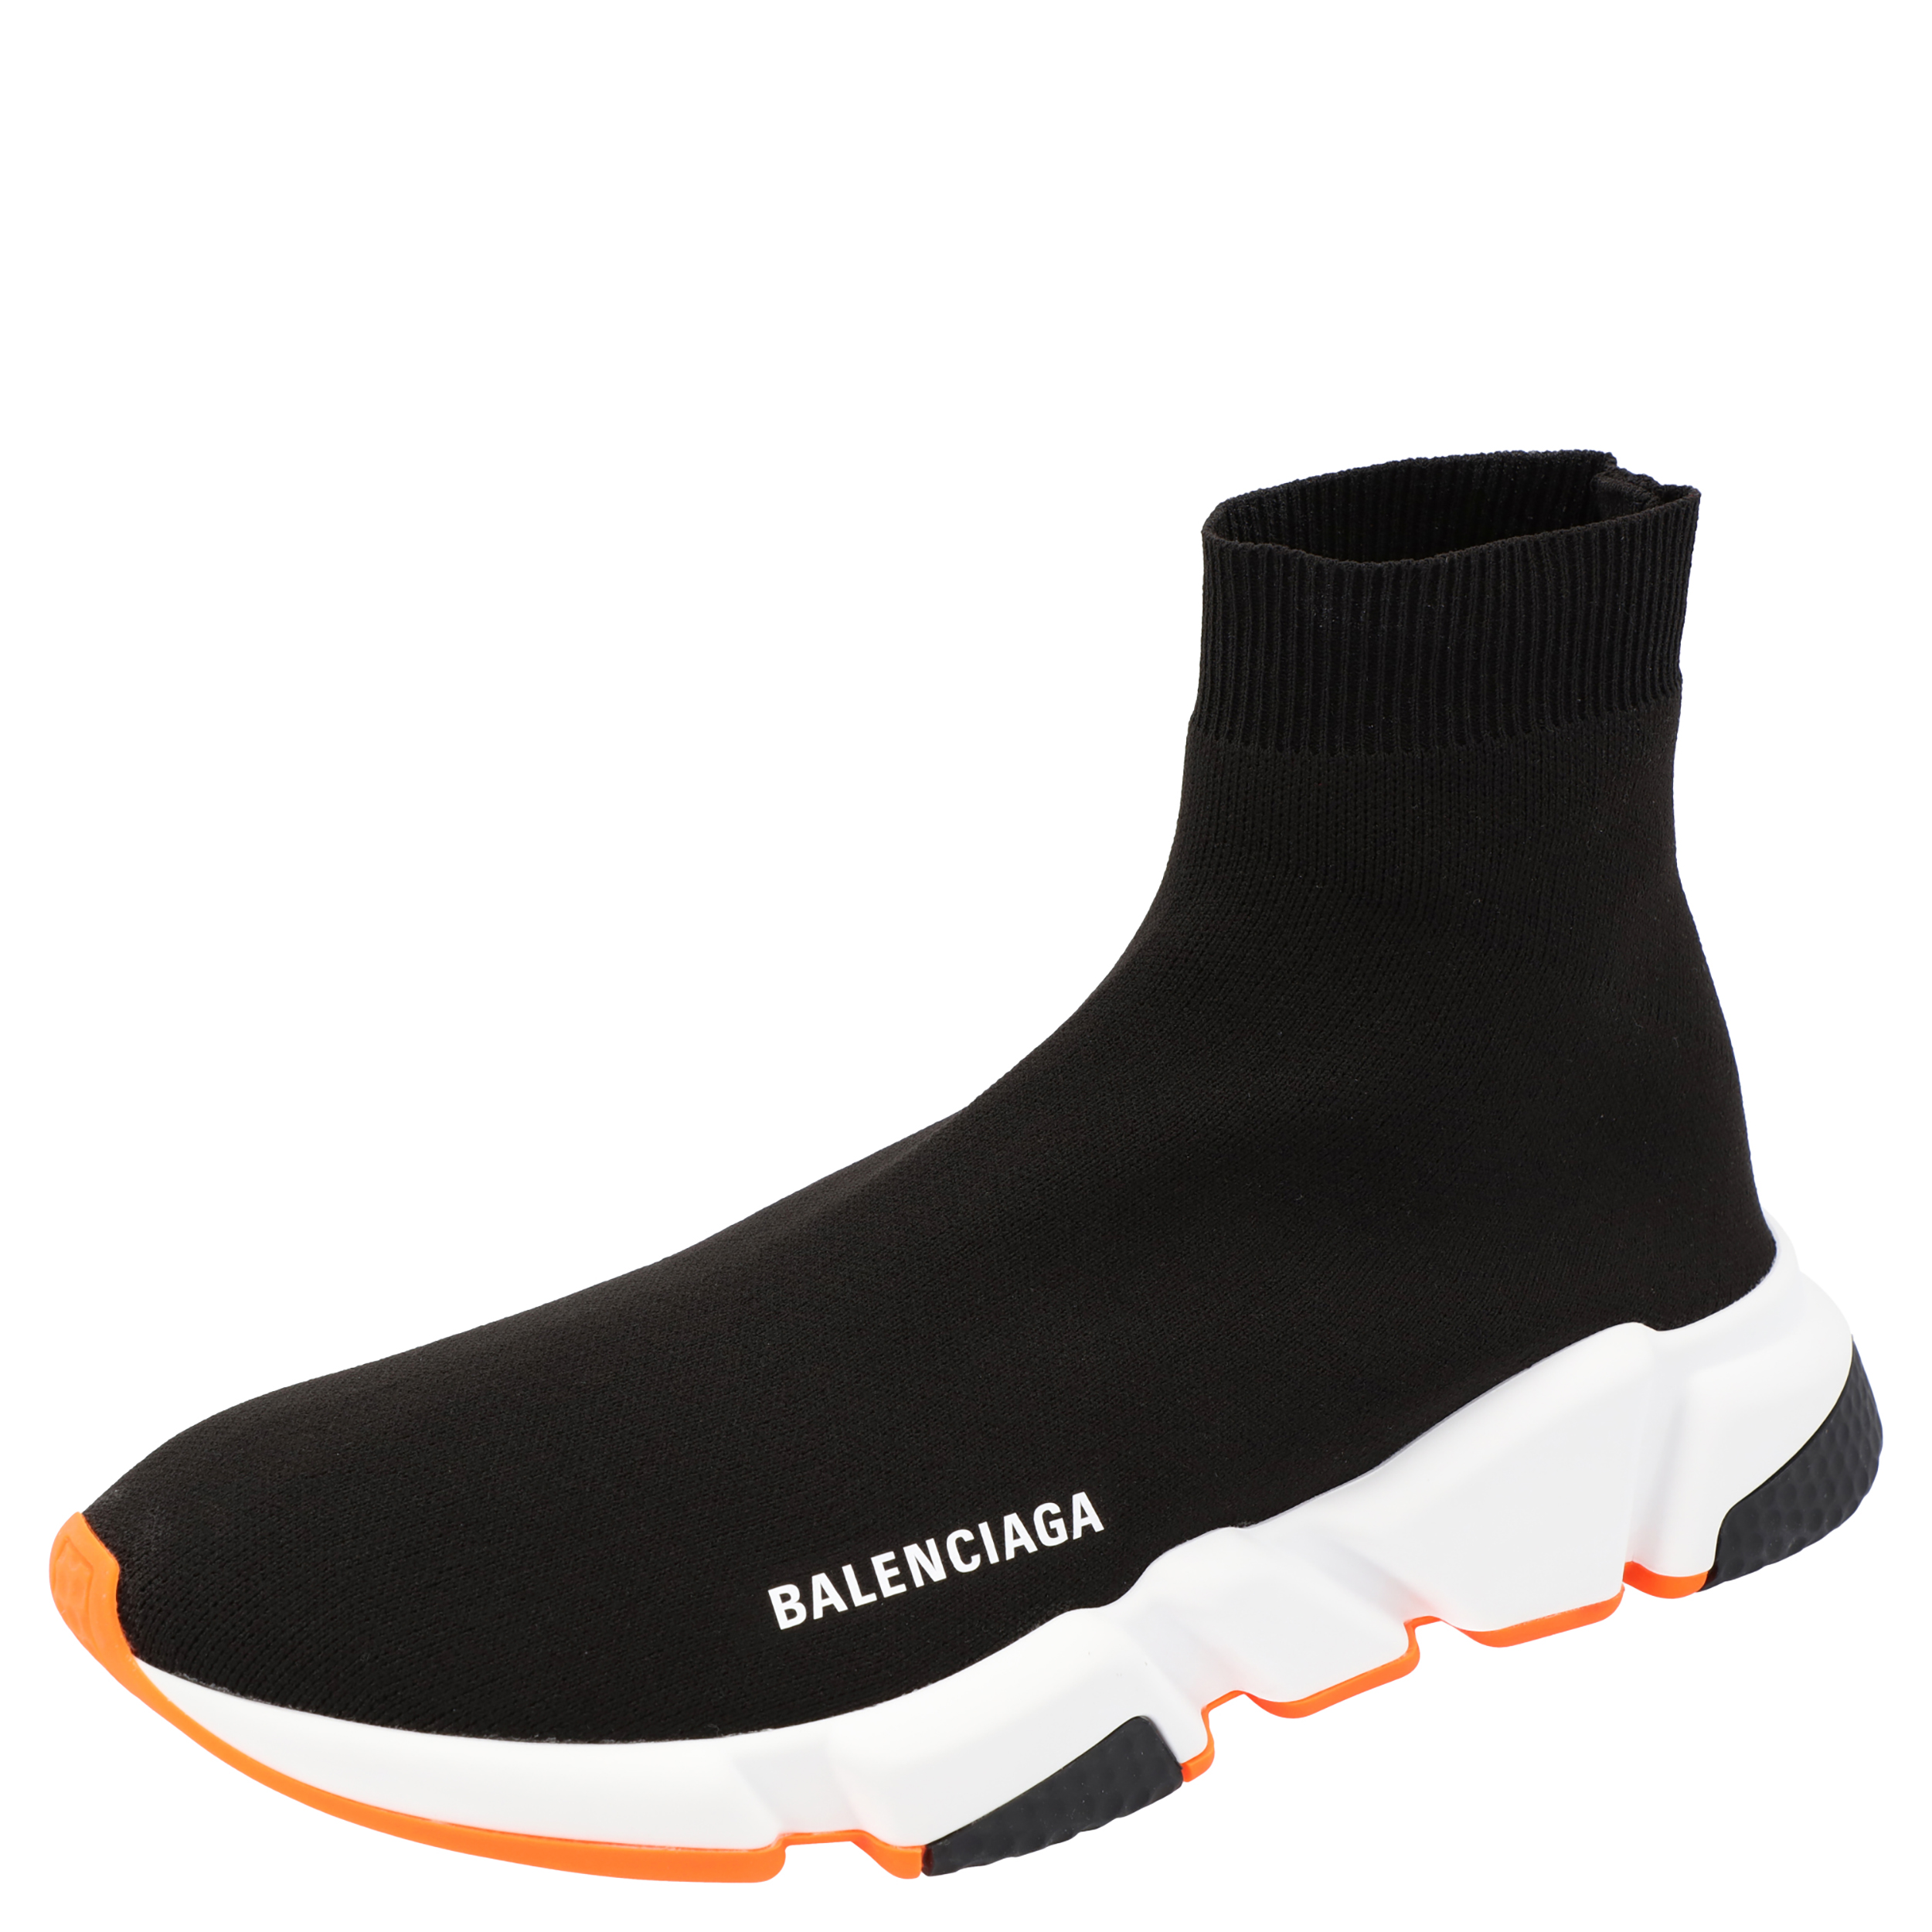 Balenciaga Black/White/Orange Speed Trainers Size 40